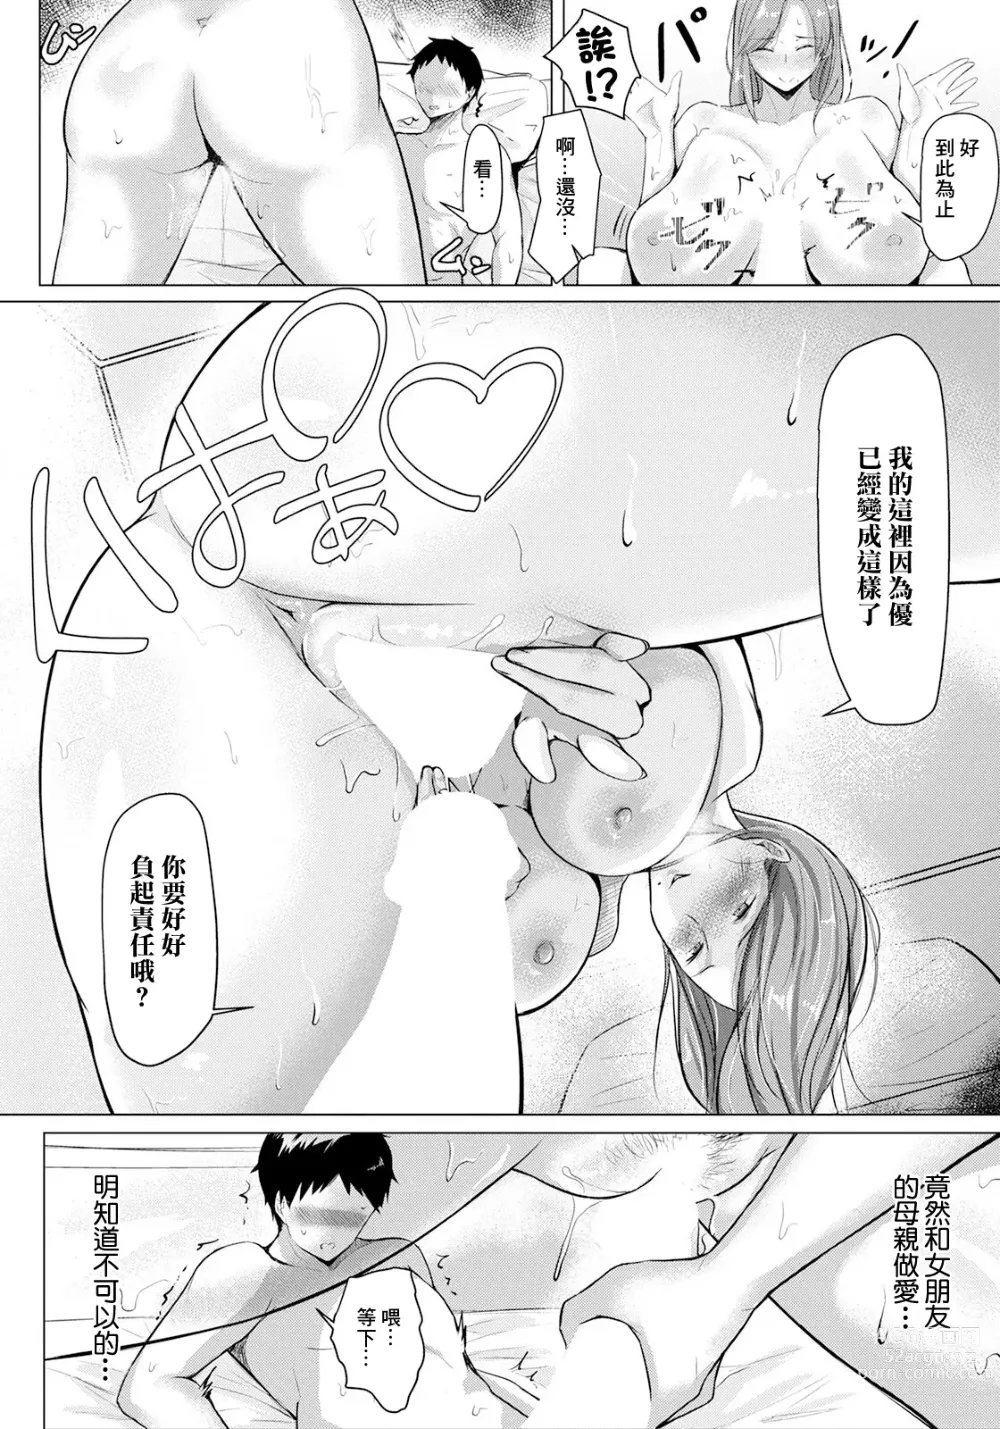 Page 12 of manga Kano Haha no Yuuwaku